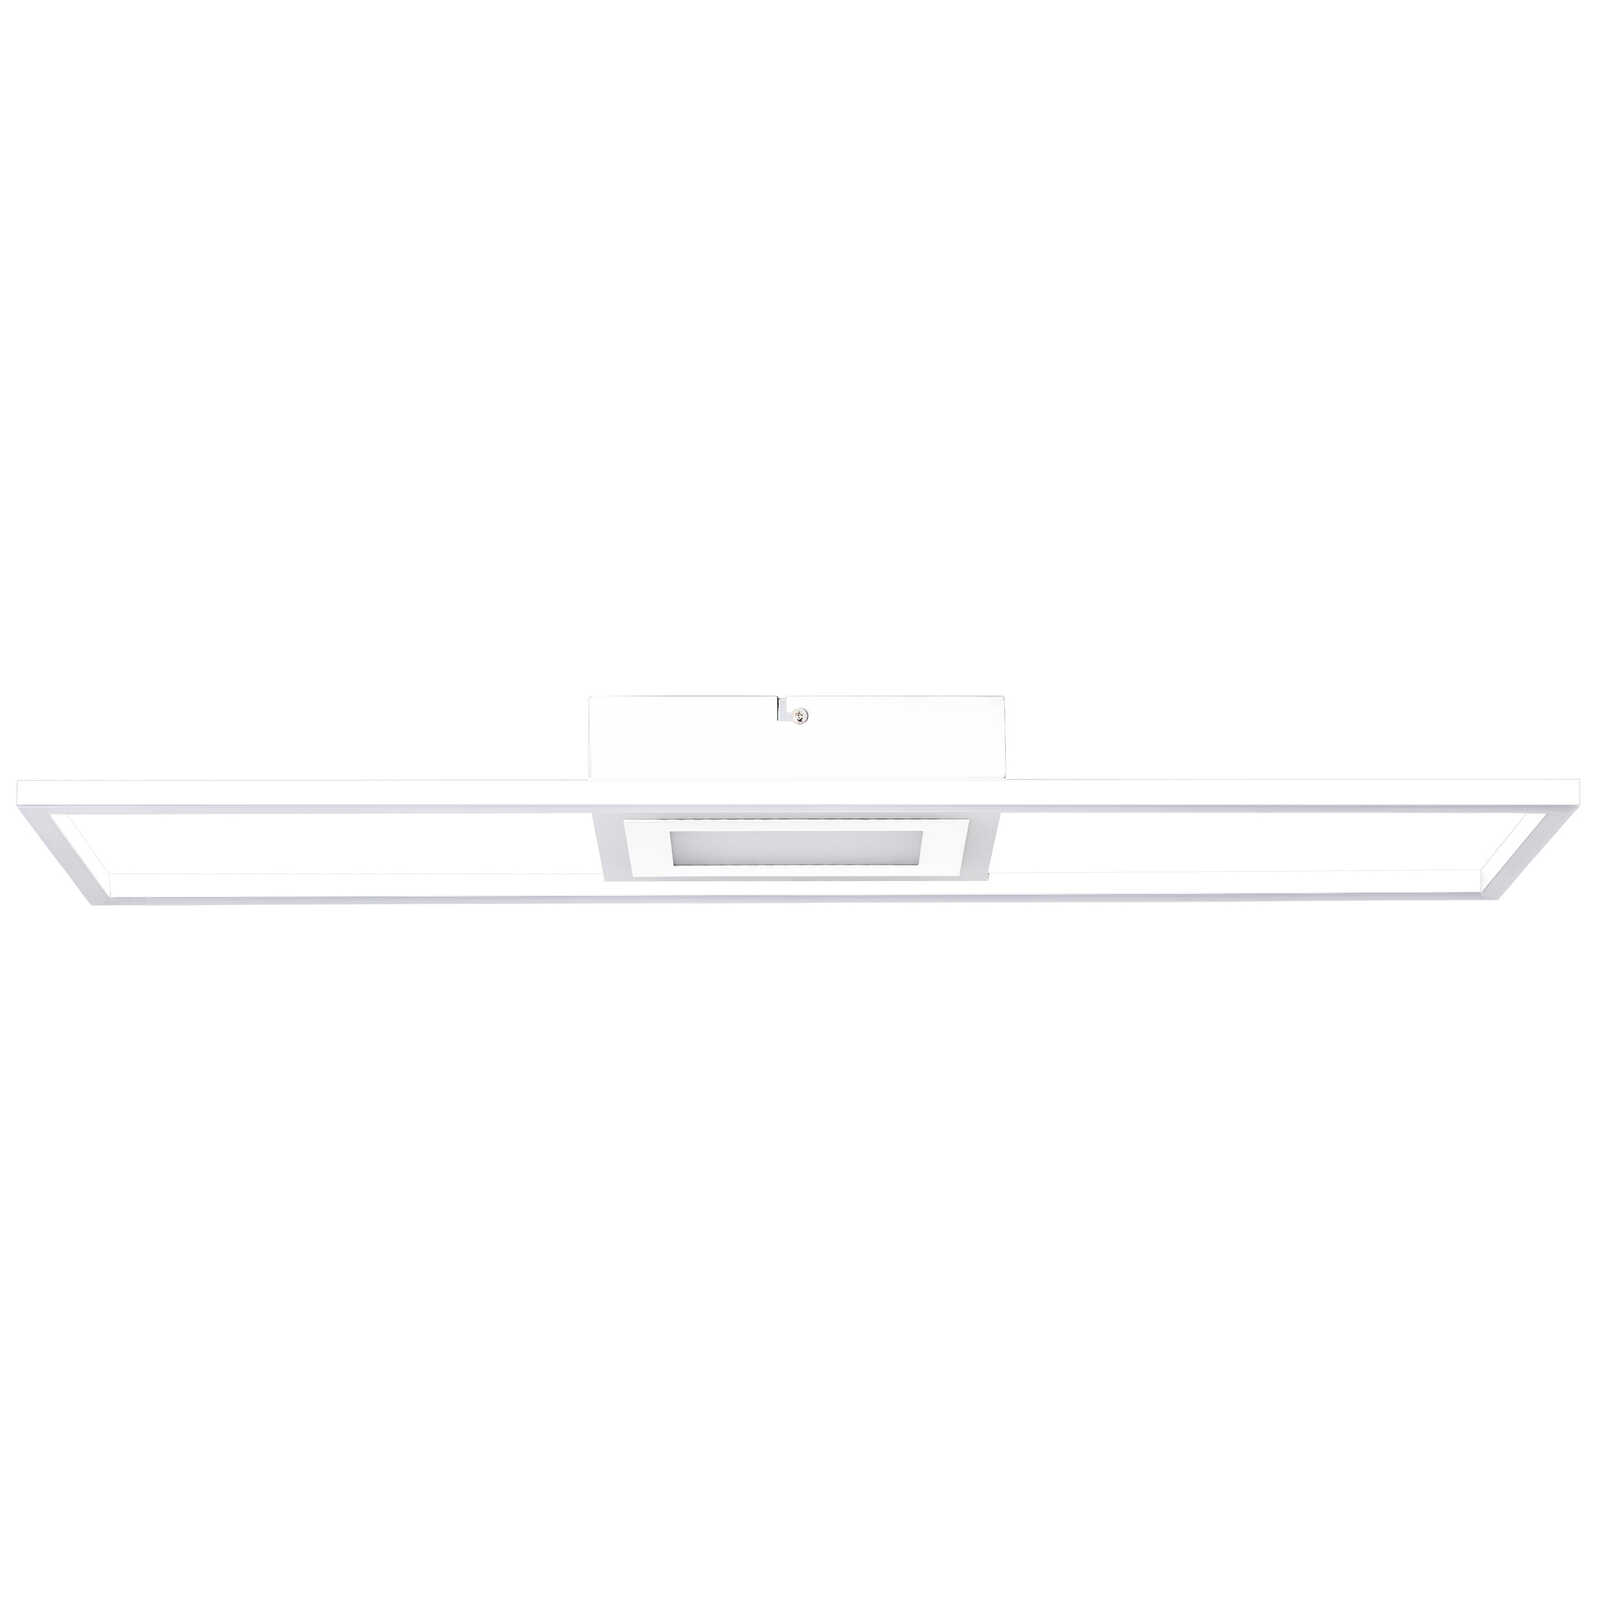             Plastic ceiling light - Benedikt 2 - White
        